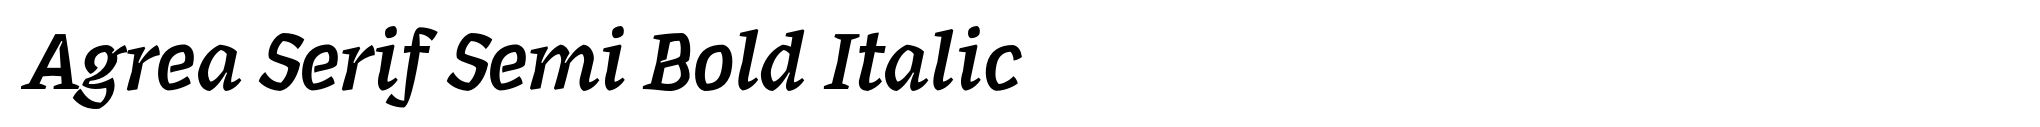 Agrea Serif Semi Bold Italic image